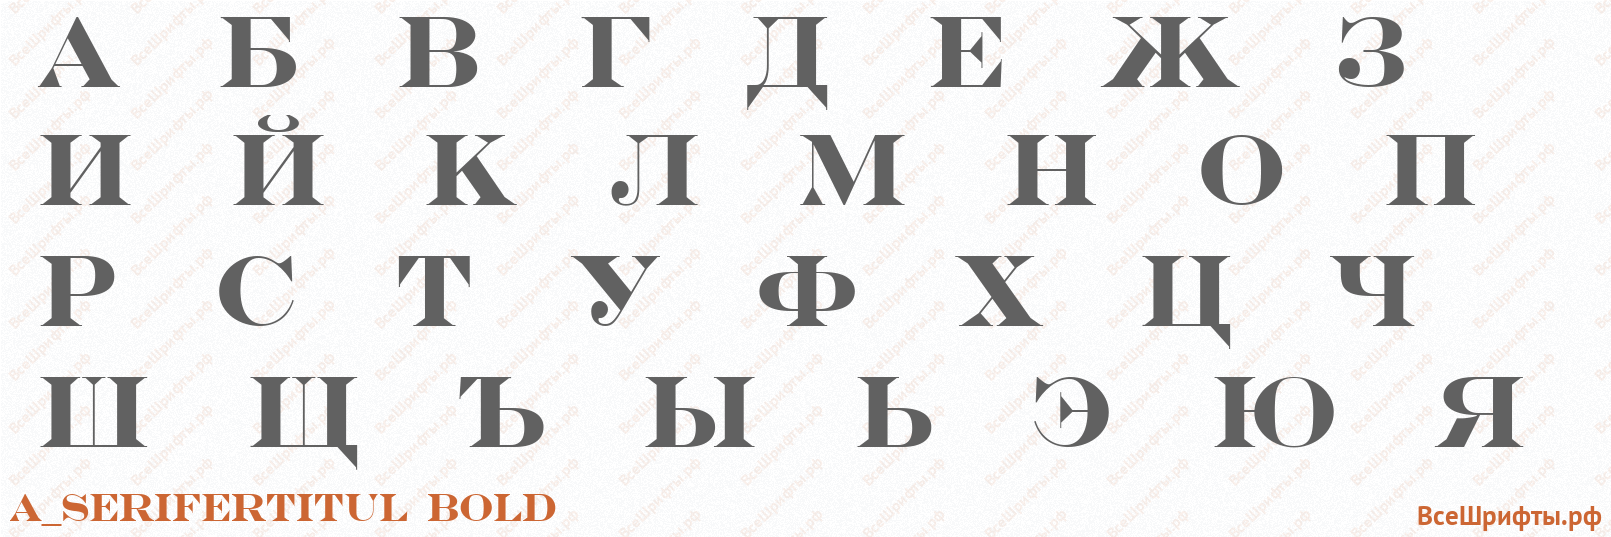 Шрифт a_SeriferTitul Bold с русскими буквами